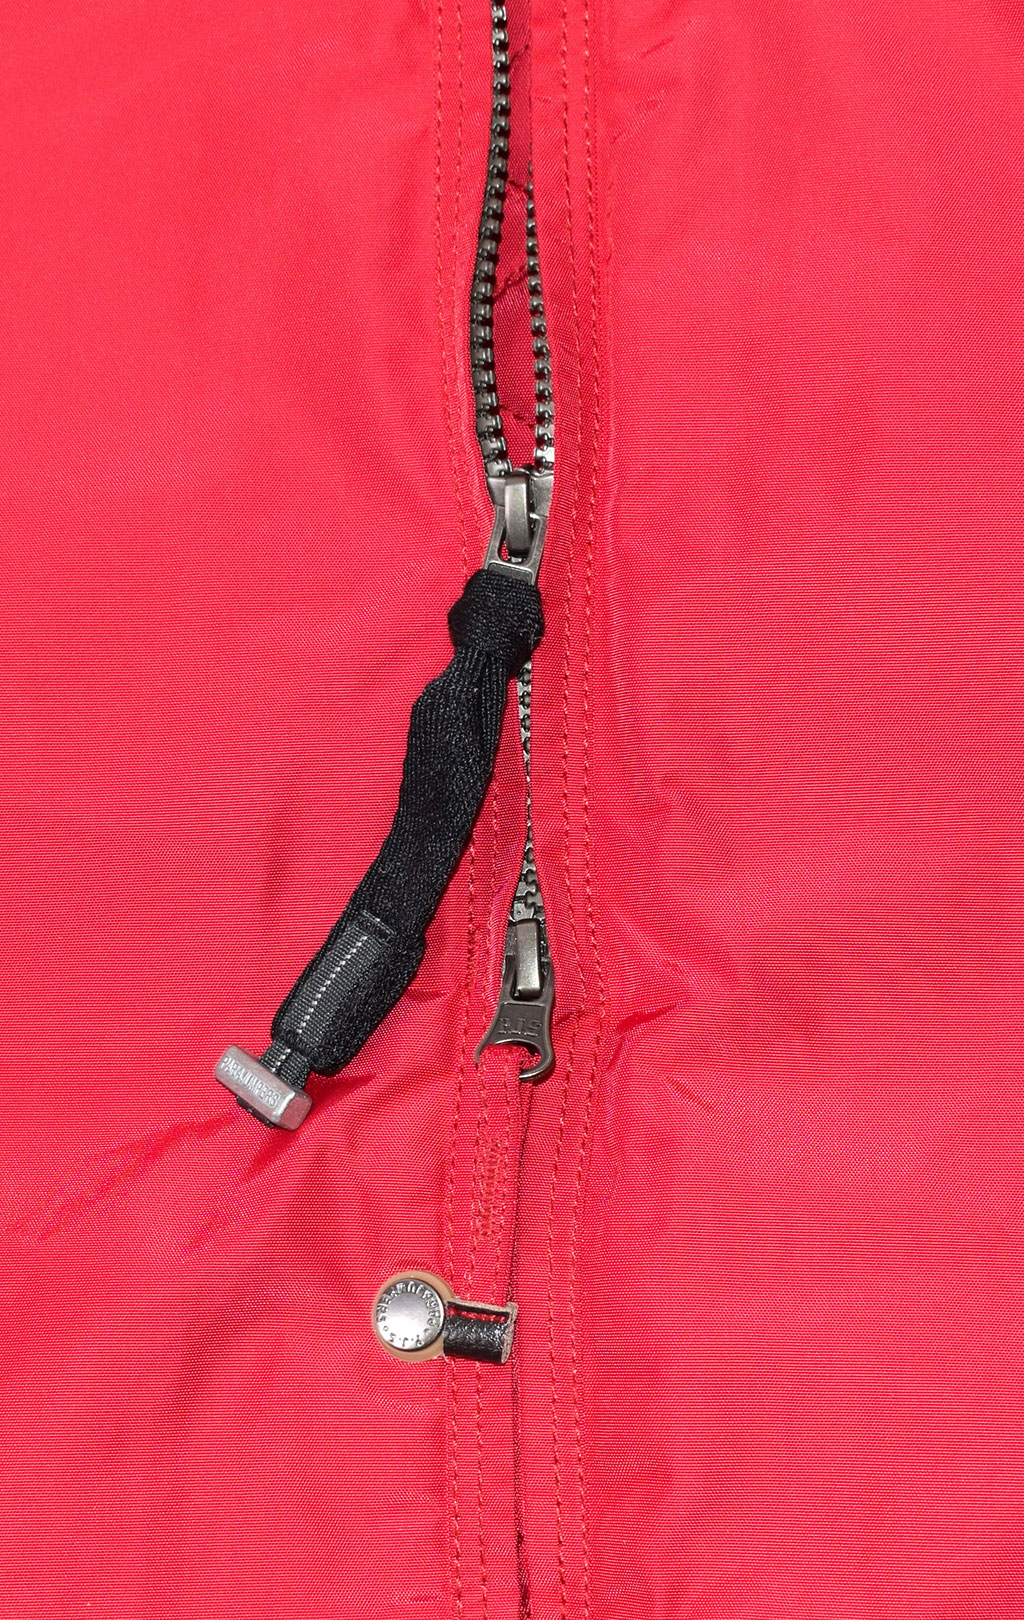 Женская куртка-пуховик PARAJUMPERS EFFIE FW 20/21 scarlet 